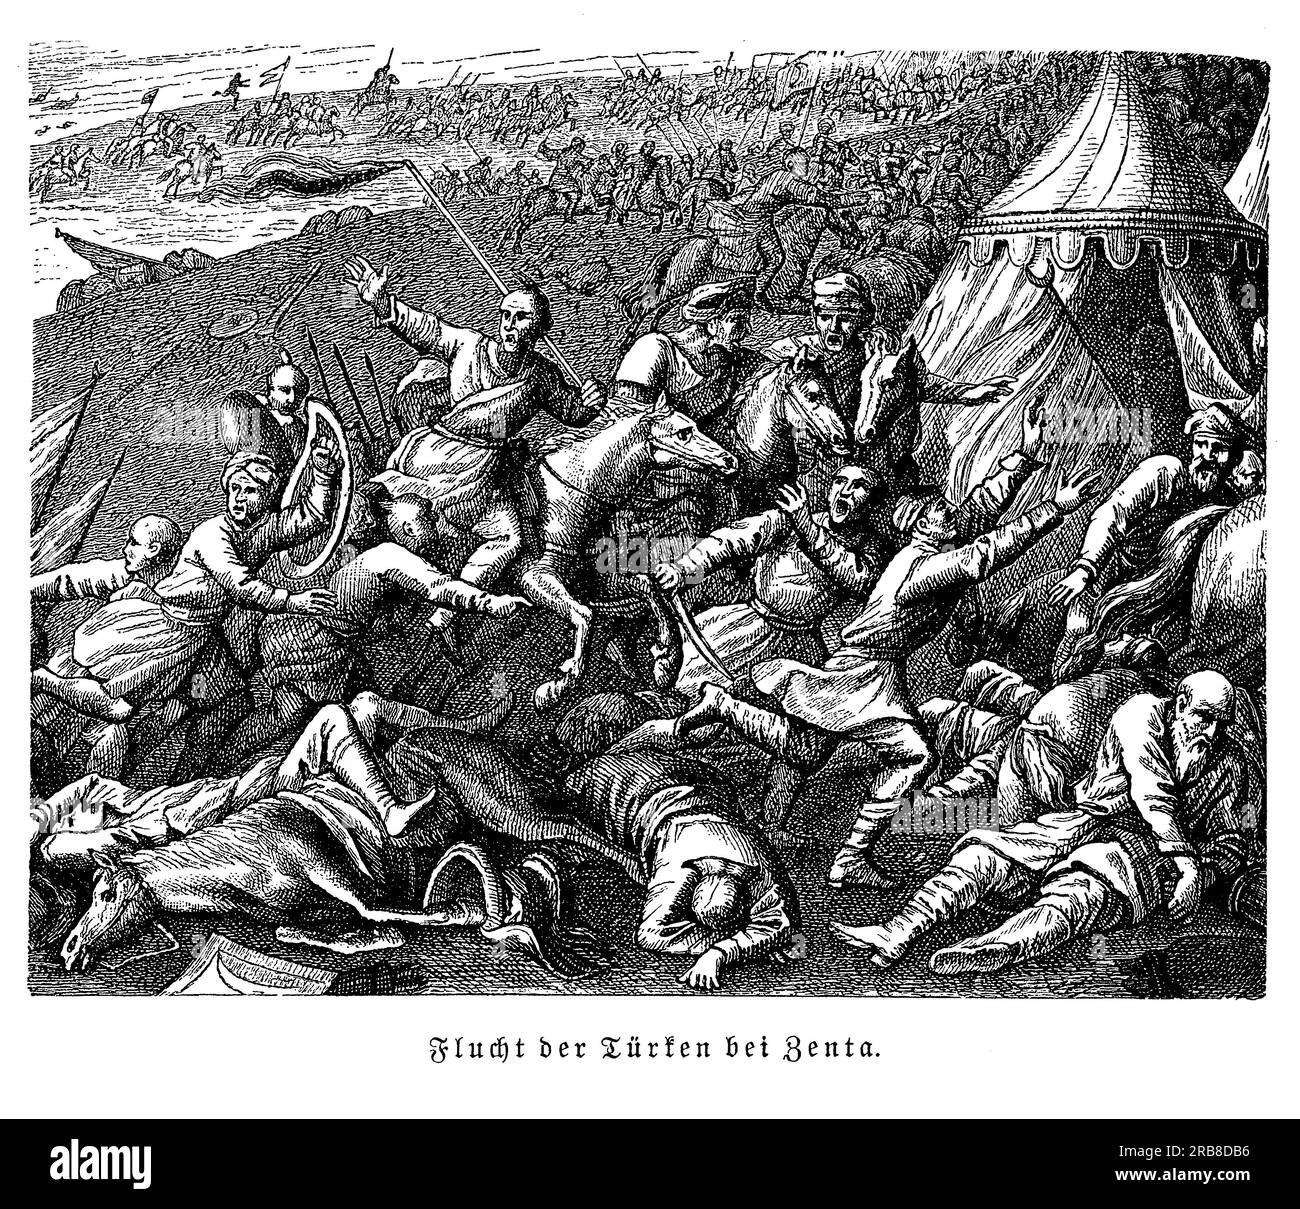 La battaglia di Zenta, nota anche come battaglia di Senta, fu una vittoria decisiva per l'Impero austriaco contro l'Impero ottomano nel 1697. La battaglia ebbe luogo nei pressi della città di Zenta, nell'attuale Serbia, e segnò la fine della grande guerra turca. L'esercito austriaco, sotto il comando del principe Eugenio di Savoia, sconfisse una forza ottomana molto più grande e costrinse l'Impero ottomano a firmare il Trattato di Karlowitz nel 1699, che pose fine all'espansione dell'Impero ottomano in Europa. La battaglia di Zenta è considerata una delle più grandi vittorie del principe Eugenio Foto Stock